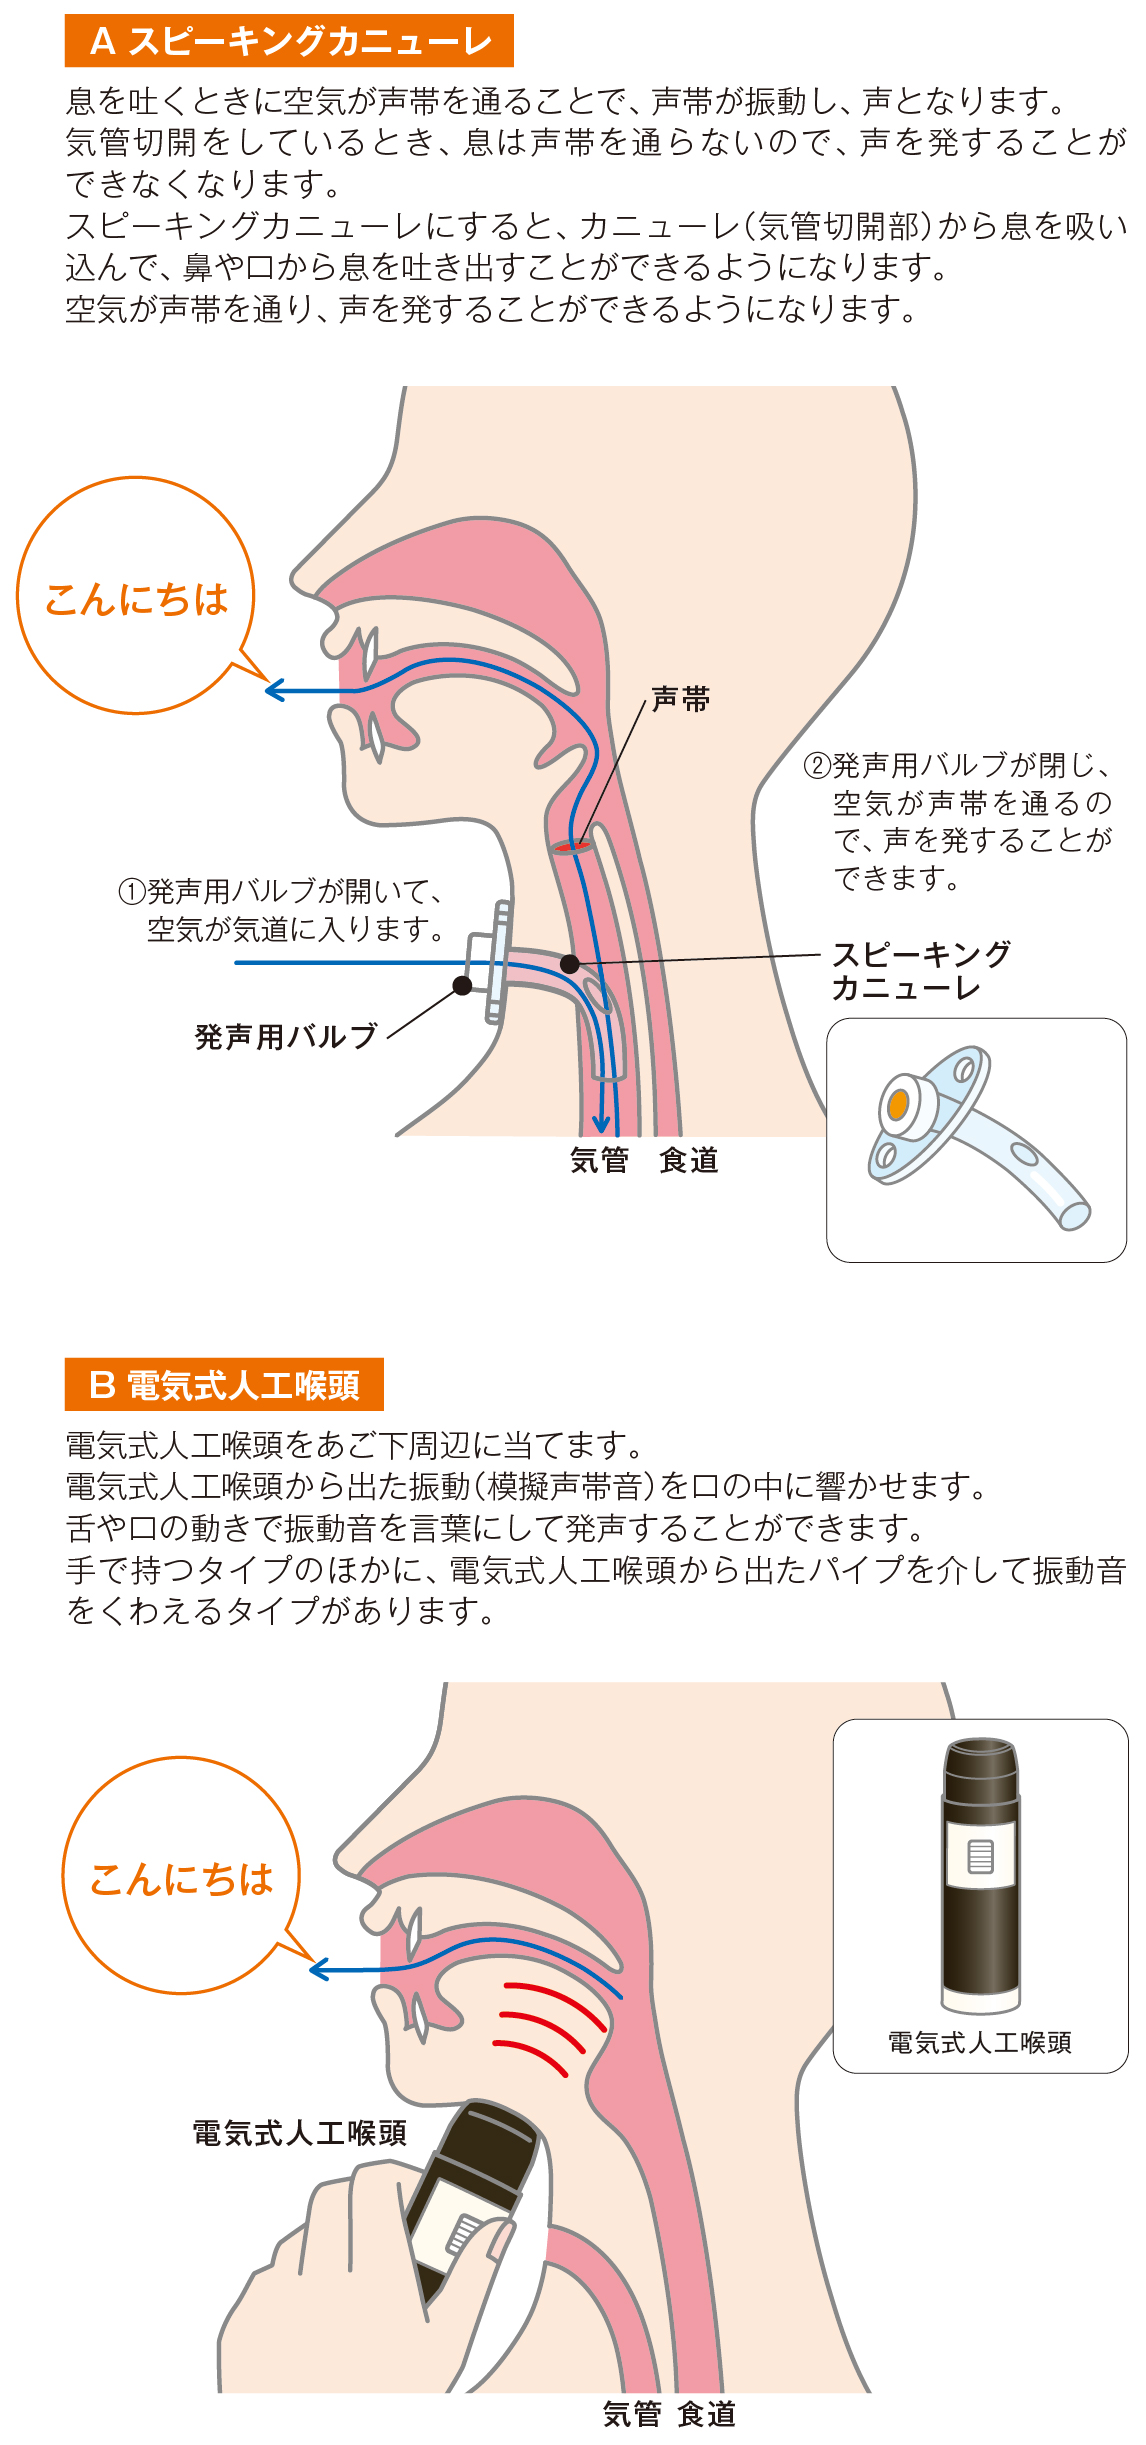 図4:スピーキングカニューレと電気式人工喉頭